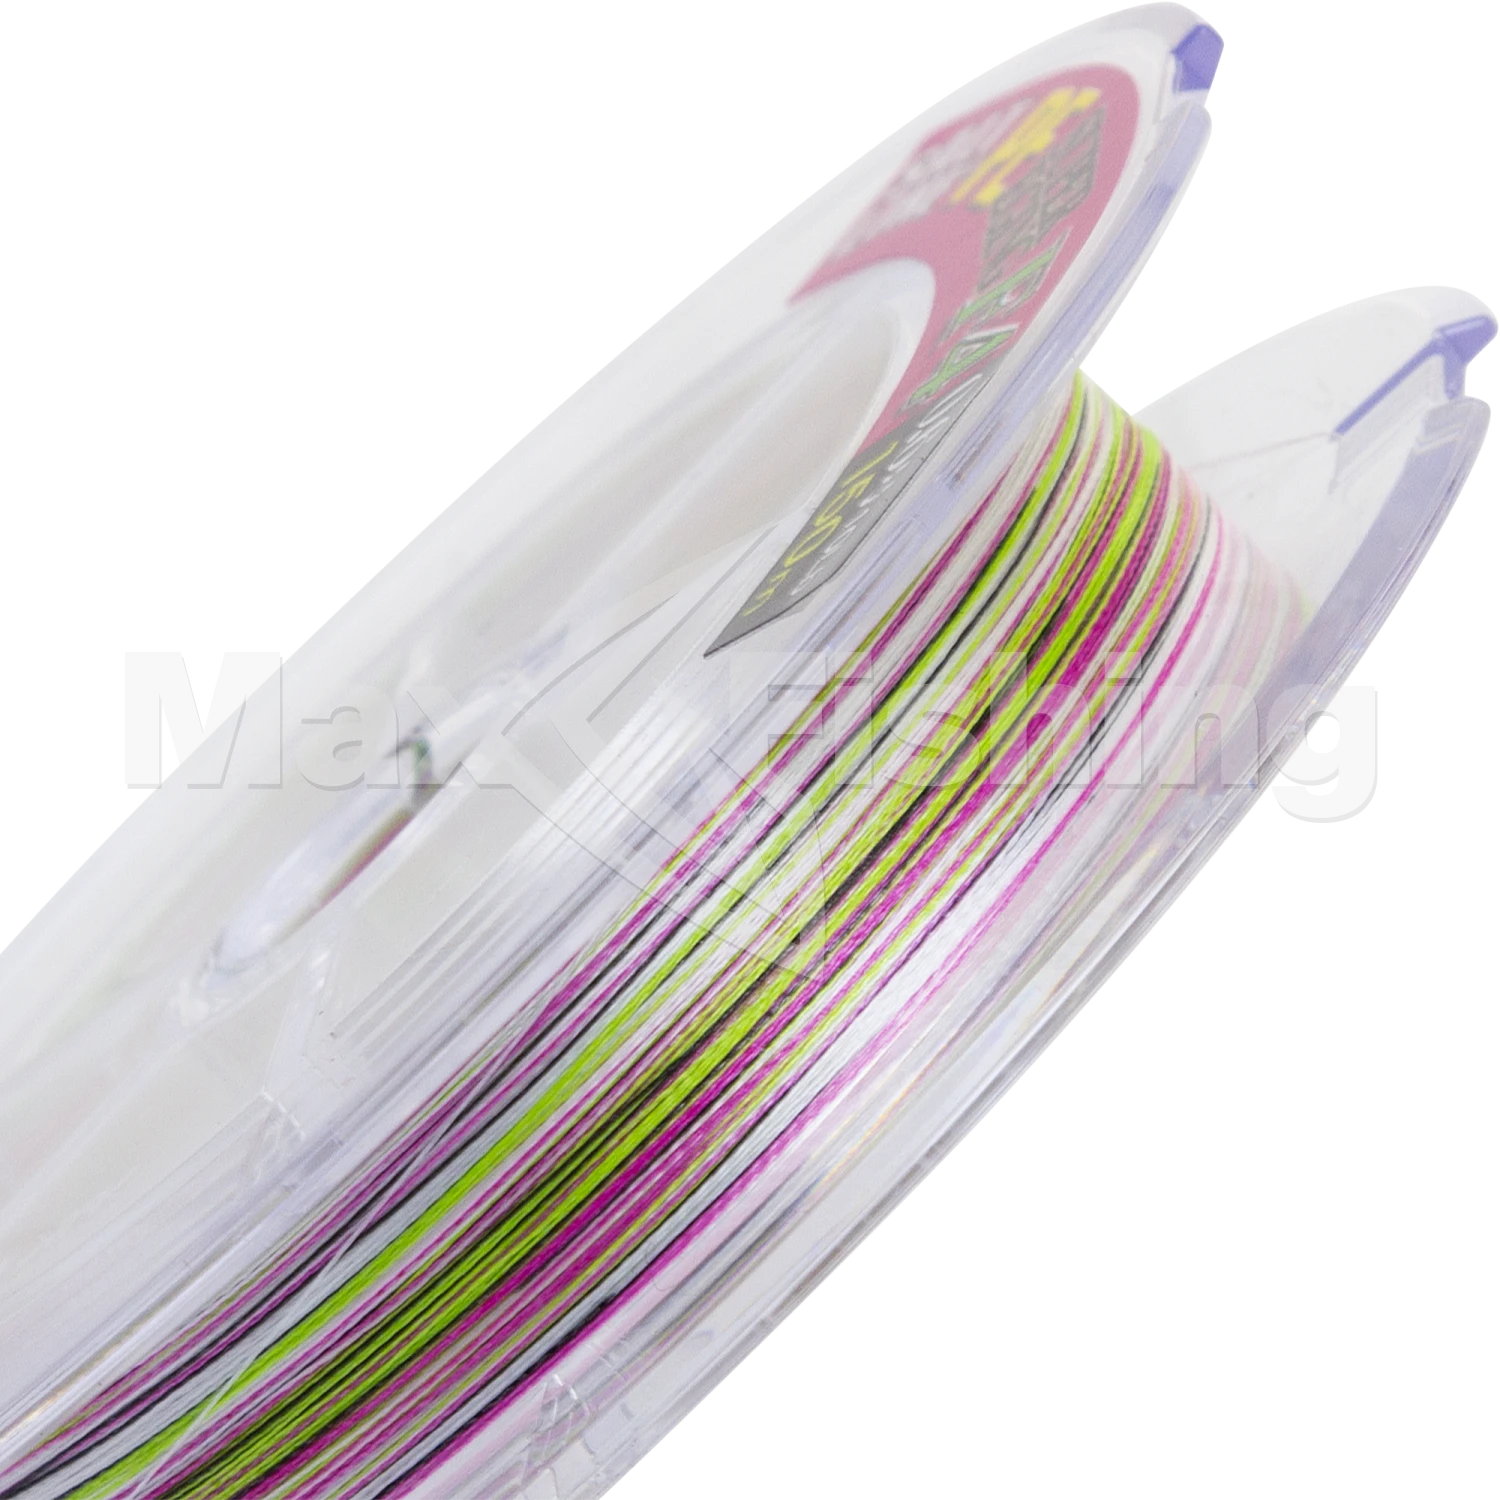 Шнур плетеный Toray Salt Line PE Super Egging F4 #0,6 150м (multicolor)